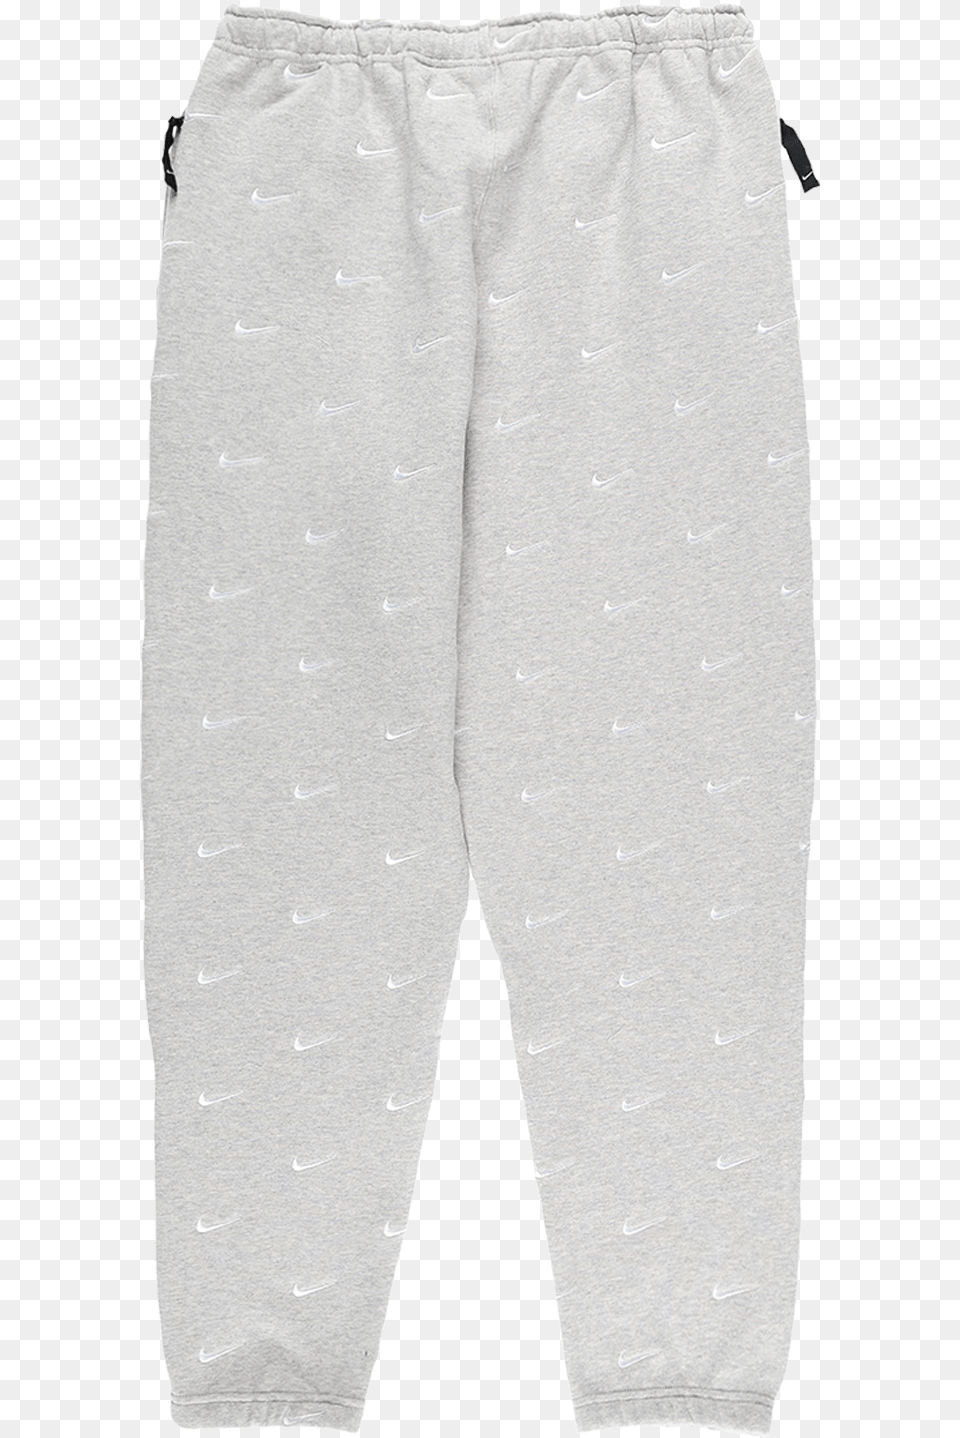 Pajamas, Clothing, Pants, Shorts, Coat Png Image